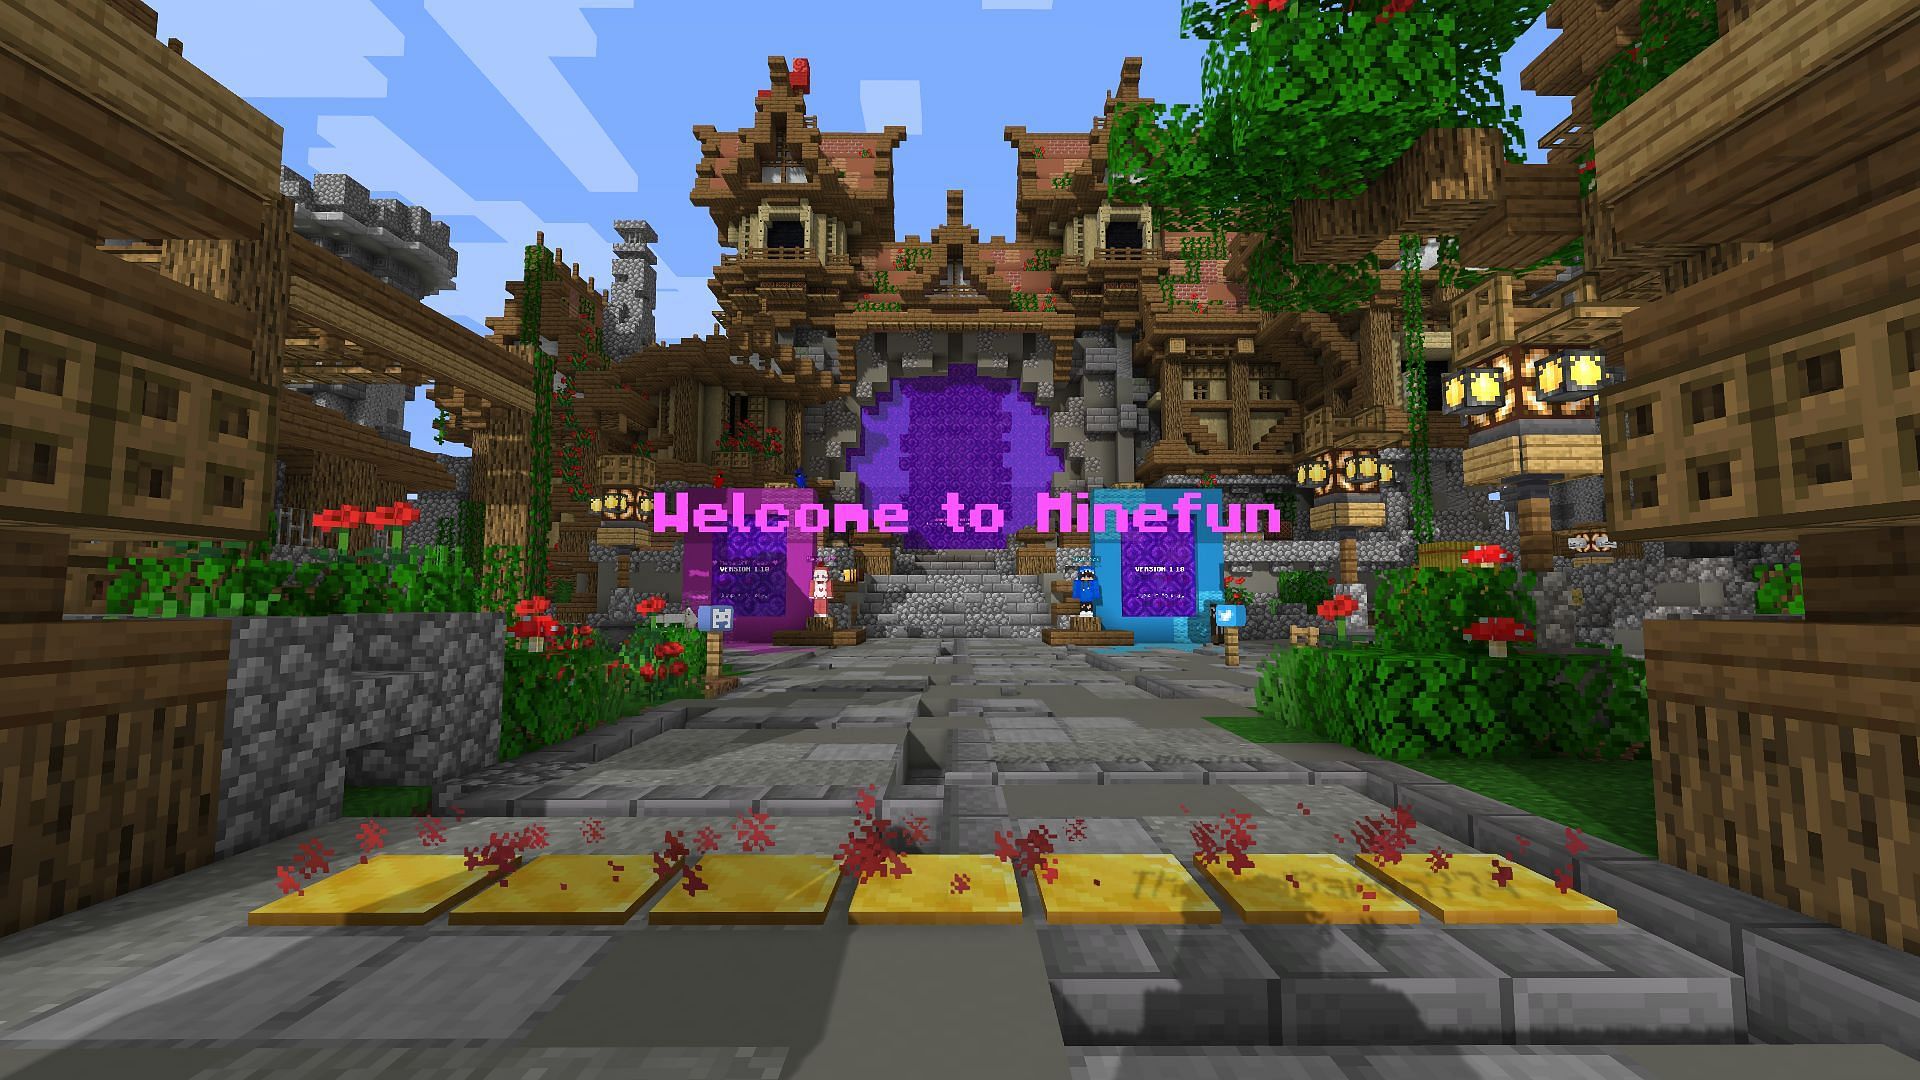 The MineVille spawn area (Image via Minecraft)